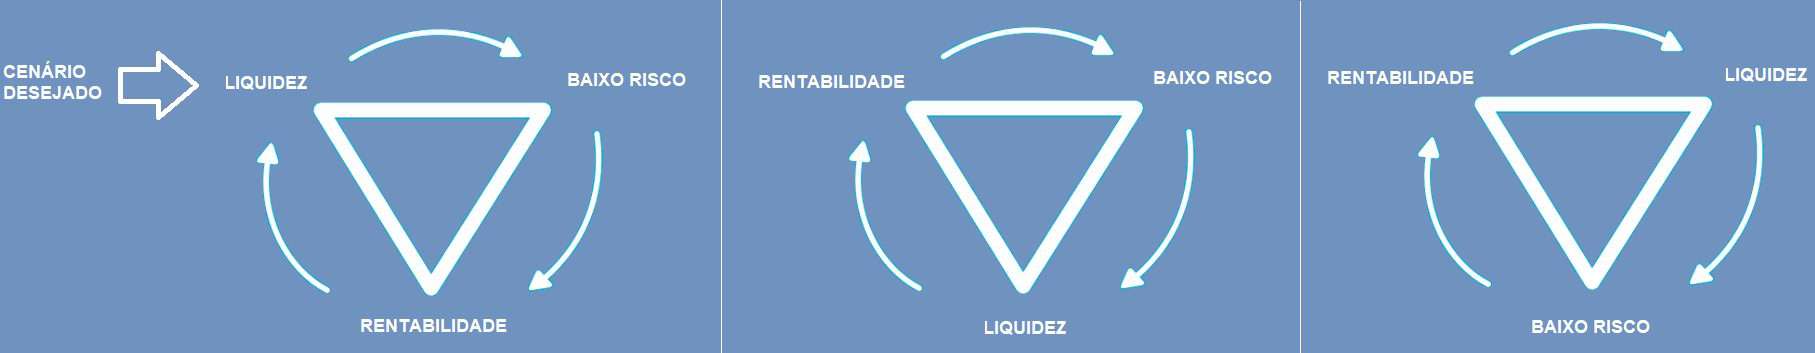 triângulos invertidos representando os 3 pilares dos investimentos: liquidez, risco e rentabilidade.